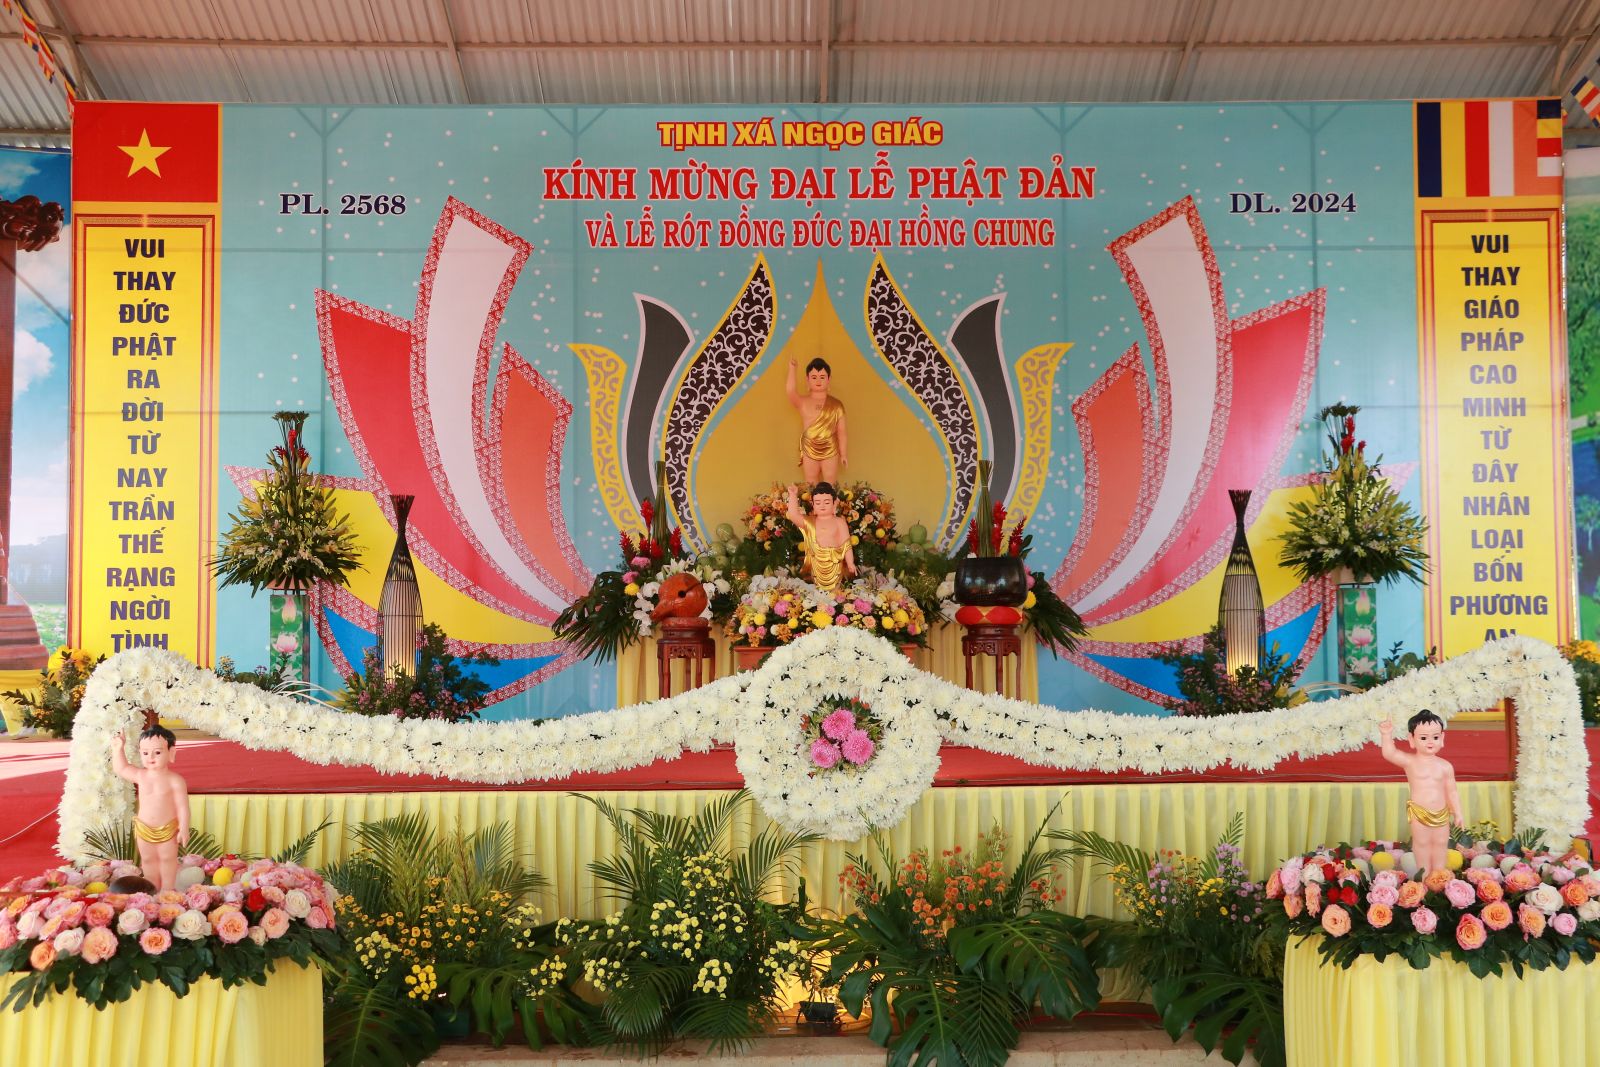 Đăk Mil: Tịnh Xá Ngọc Giác tổ chức Đại Lễ Phật đản PL. 2568 và rót đồng đúc Đại hồng chung